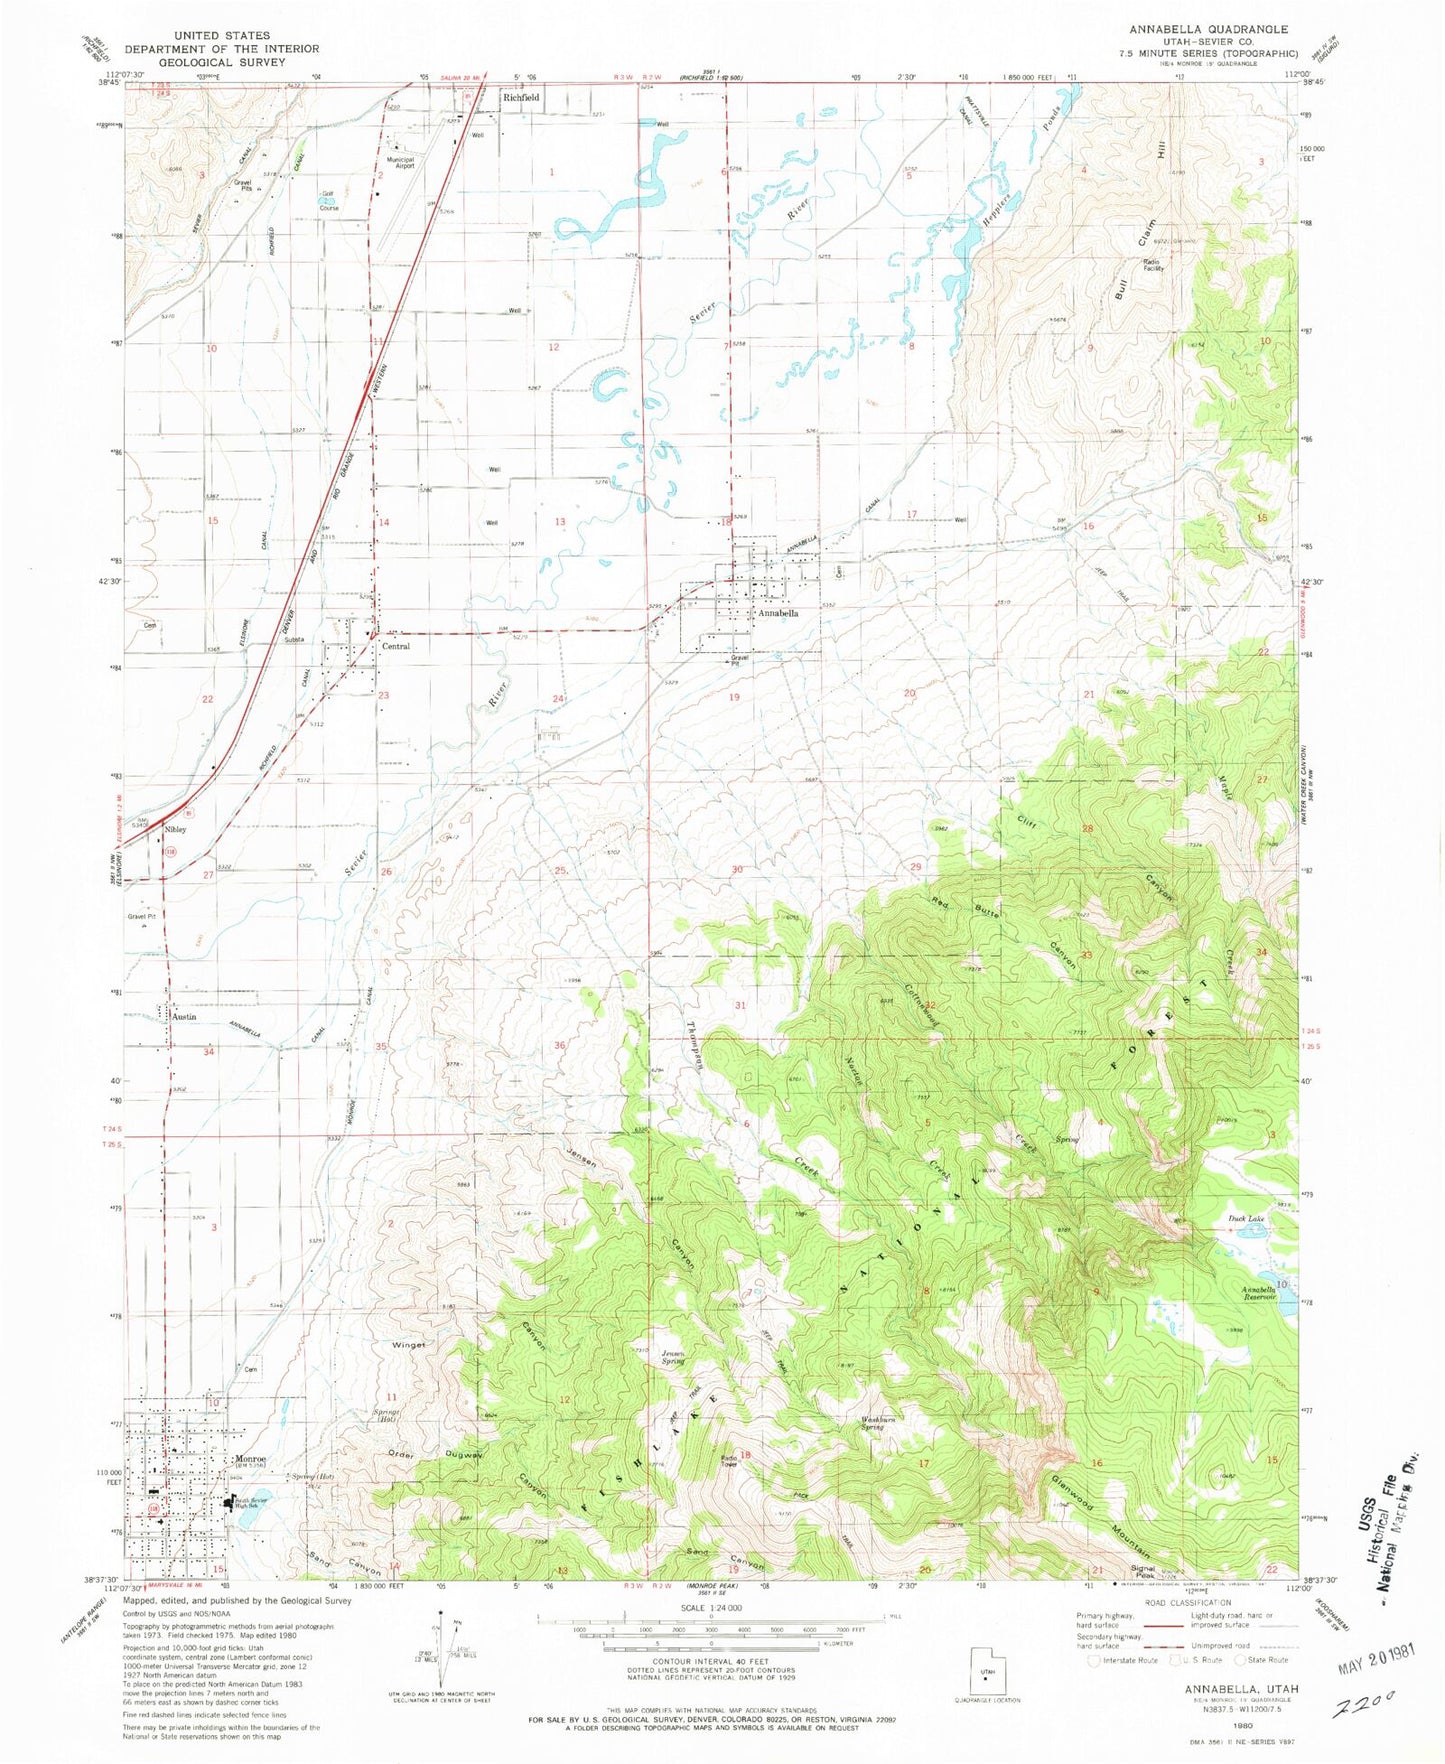 Classic USGS Annabella Utah 7.5'x7.5' Topo Map Image